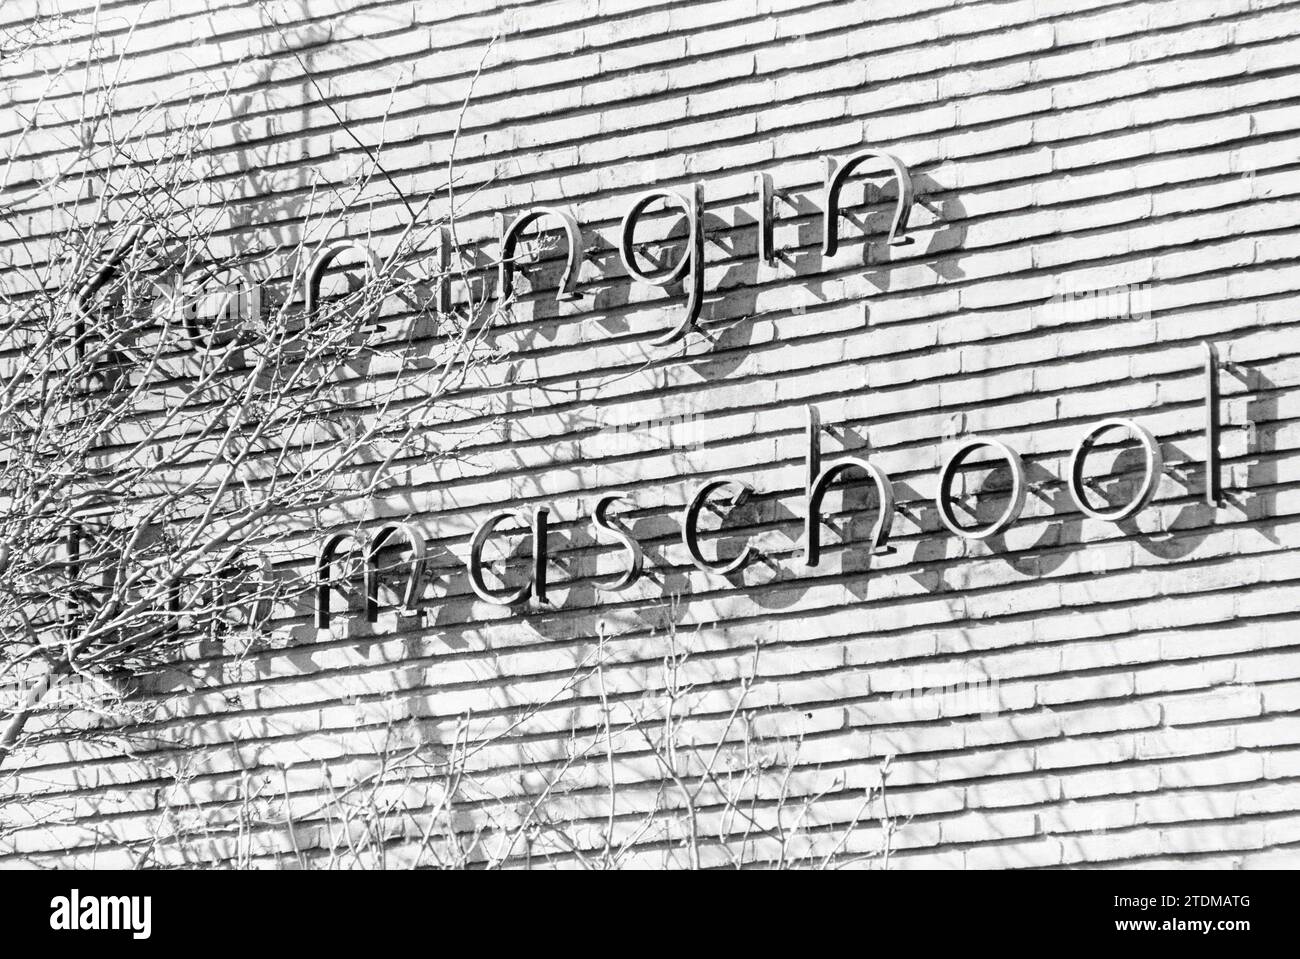 Anzeichen für Schulen, die in Haarlem fusioniert werden, Schulen, 02-04-1979, Whizgle News from the Past, Zukunftszubehör. Erkunden Sie historische Geschichten, das Image der niederländischen Agentur aus einer modernen Perspektive, die die Lücke zwischen den Ereignissen von gestern und den Erkenntnissen von morgen überbrückt. Eine zeitlose Reise, die die Geschichten prägt, die unsere Zukunft prägen Stockfoto